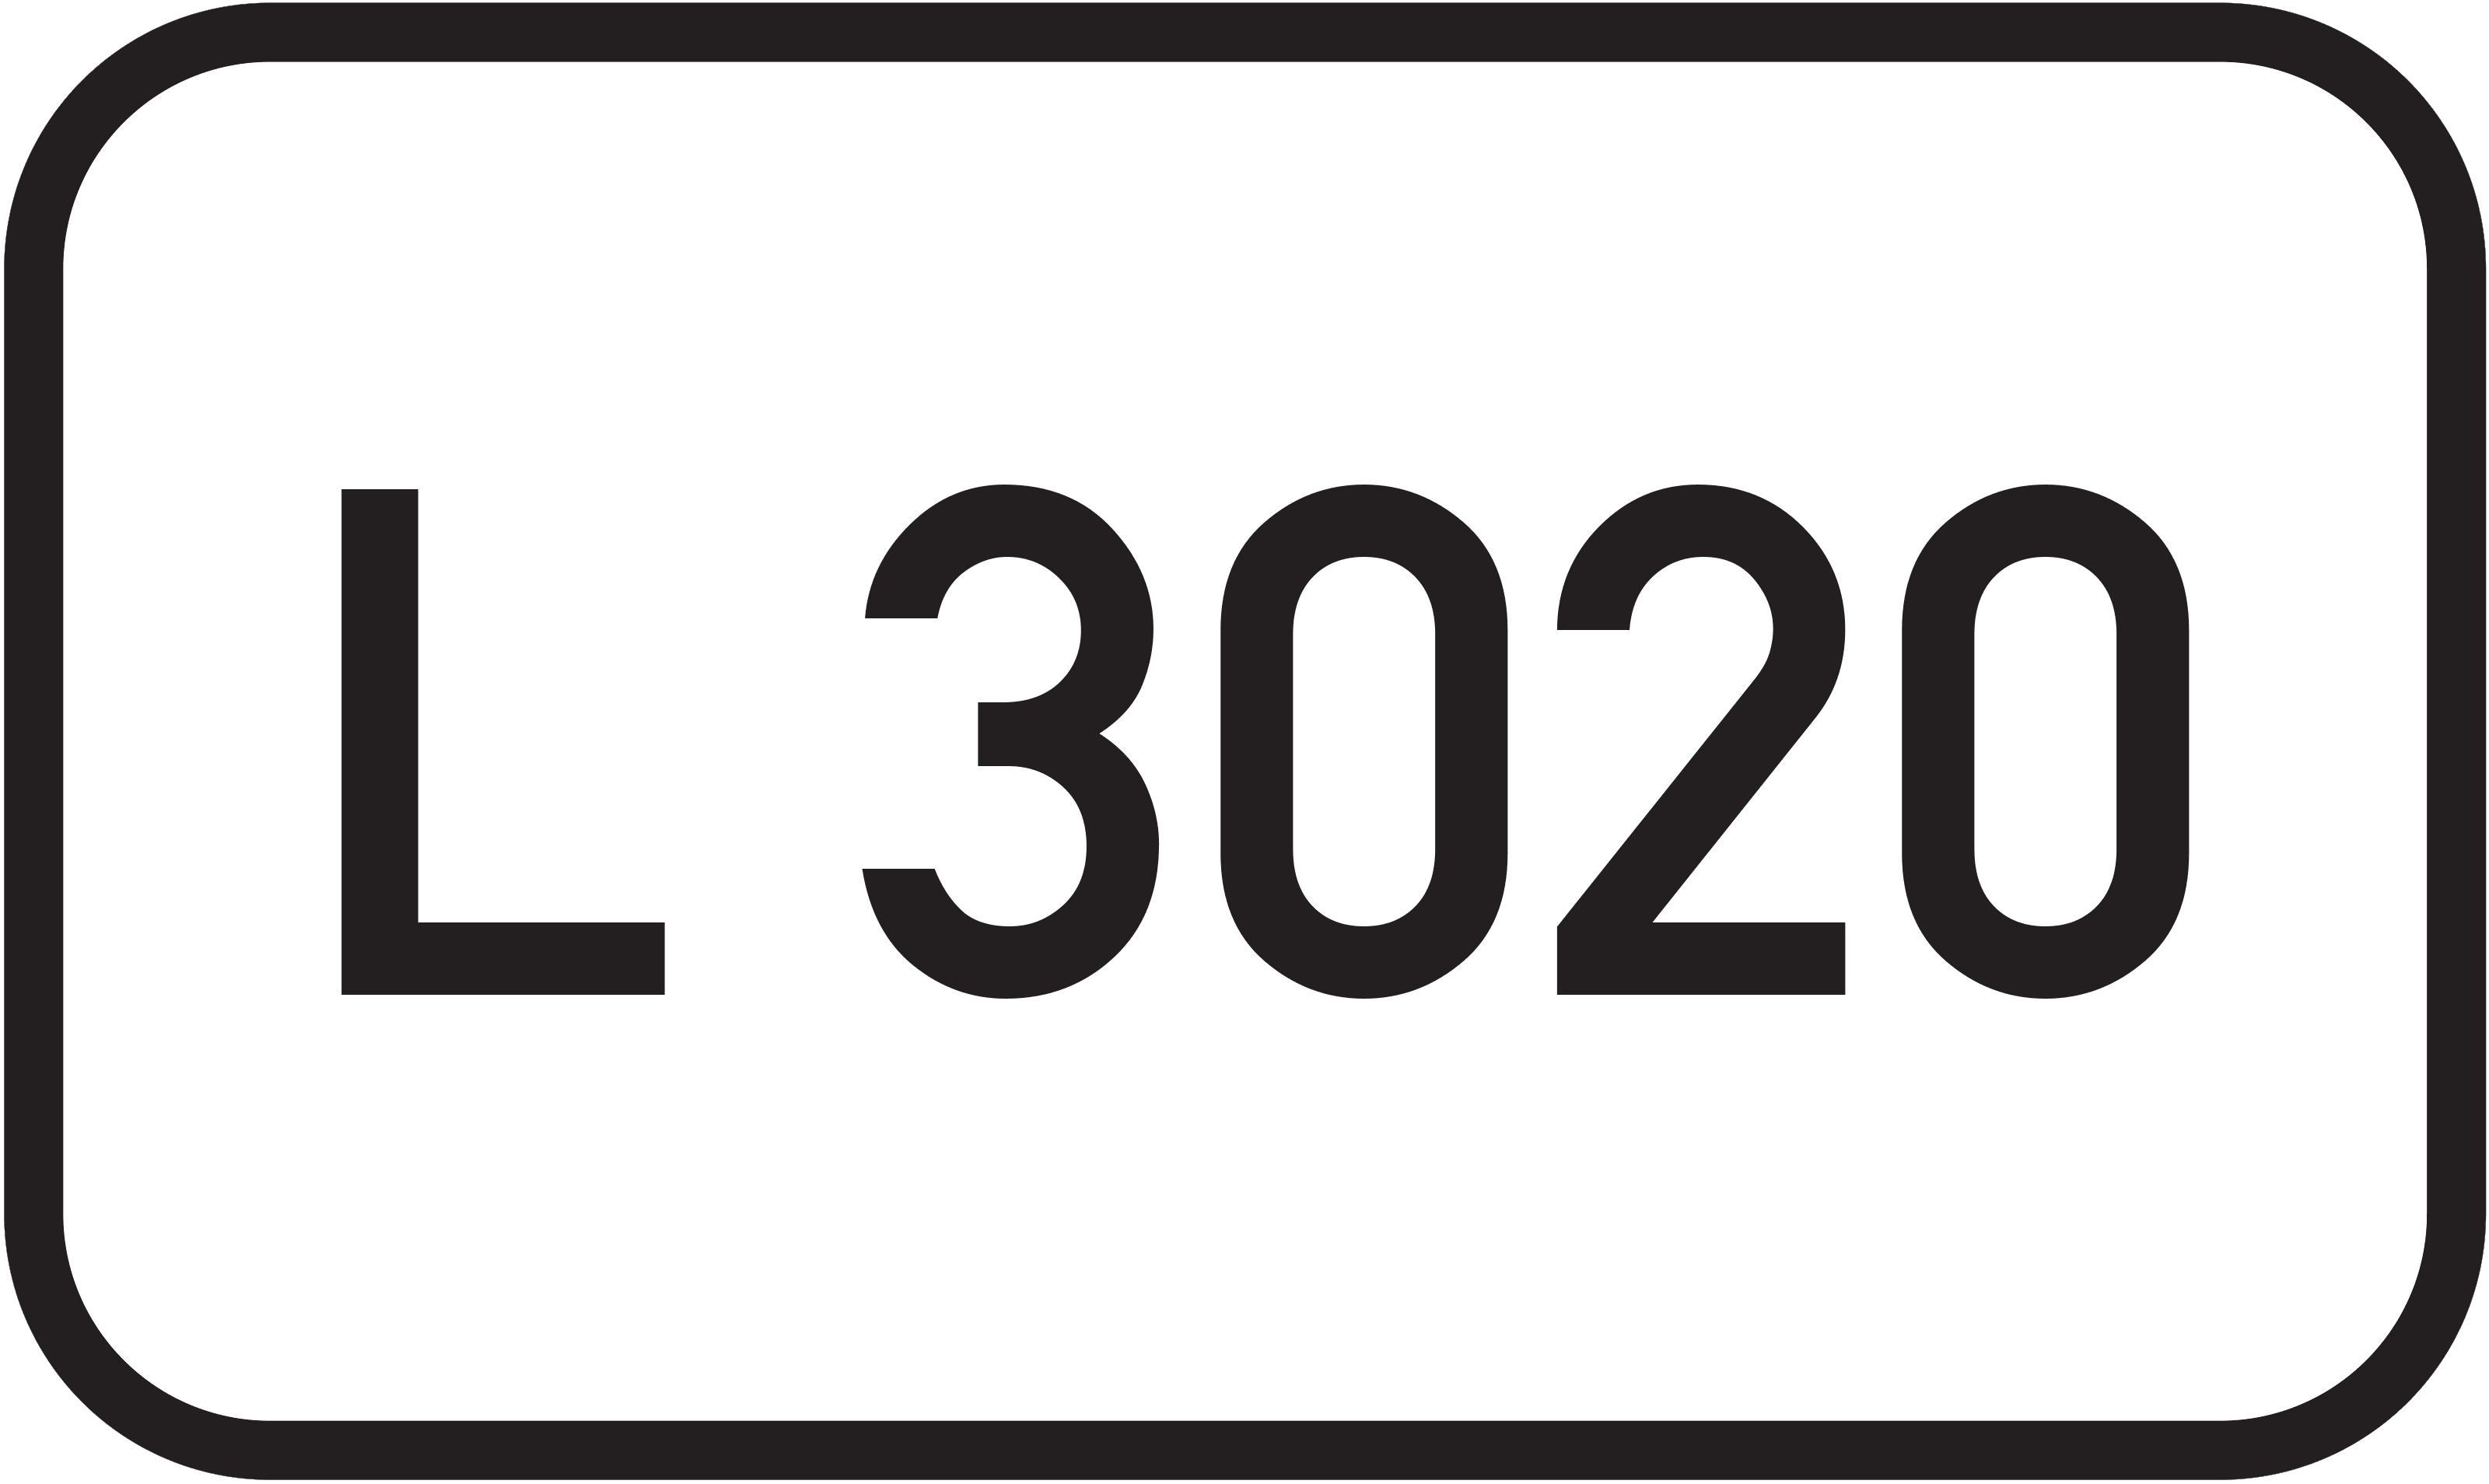 Landesstraße L 3020